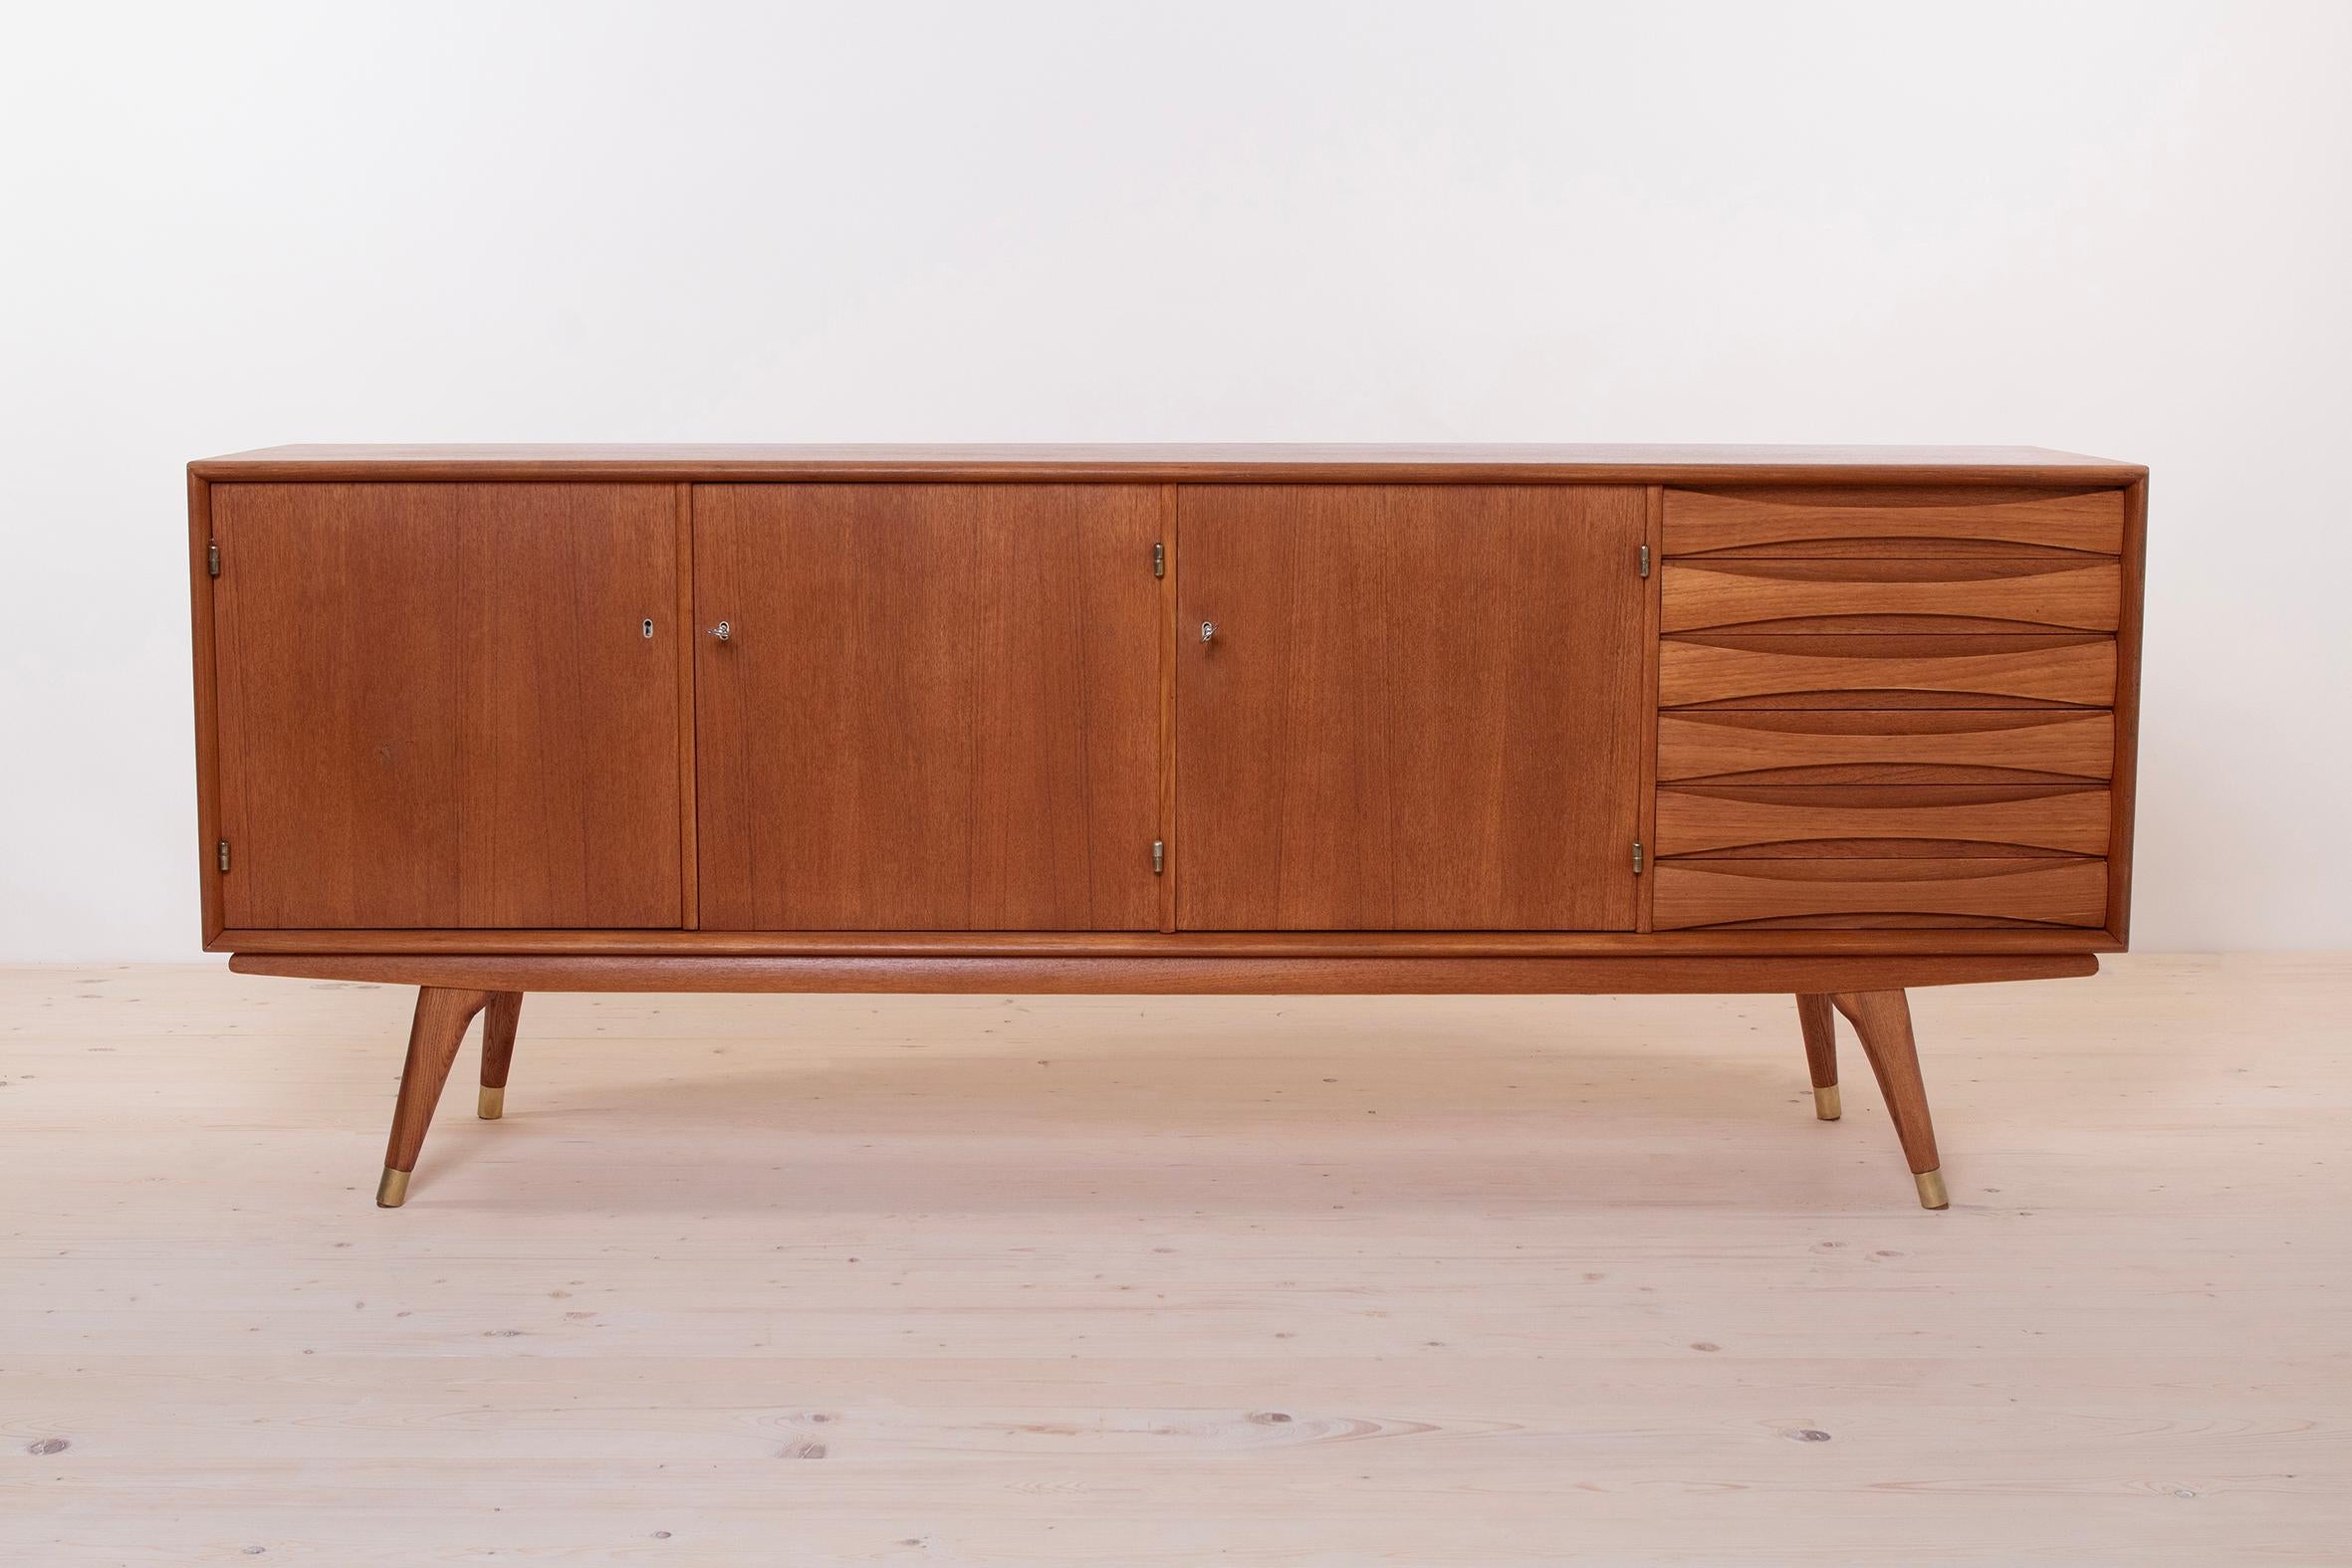 Dieses schöne Sideboard aus Teakholz wurde von Sven Andersen entworfen und in der zweiten Hälfte der 1950er Jahre in Norwegen hergestellt. Das Möbelstück verfügt über drei Türen, die viel Stauraum bieten, und sechs Schubladen im rechten Teil. Das